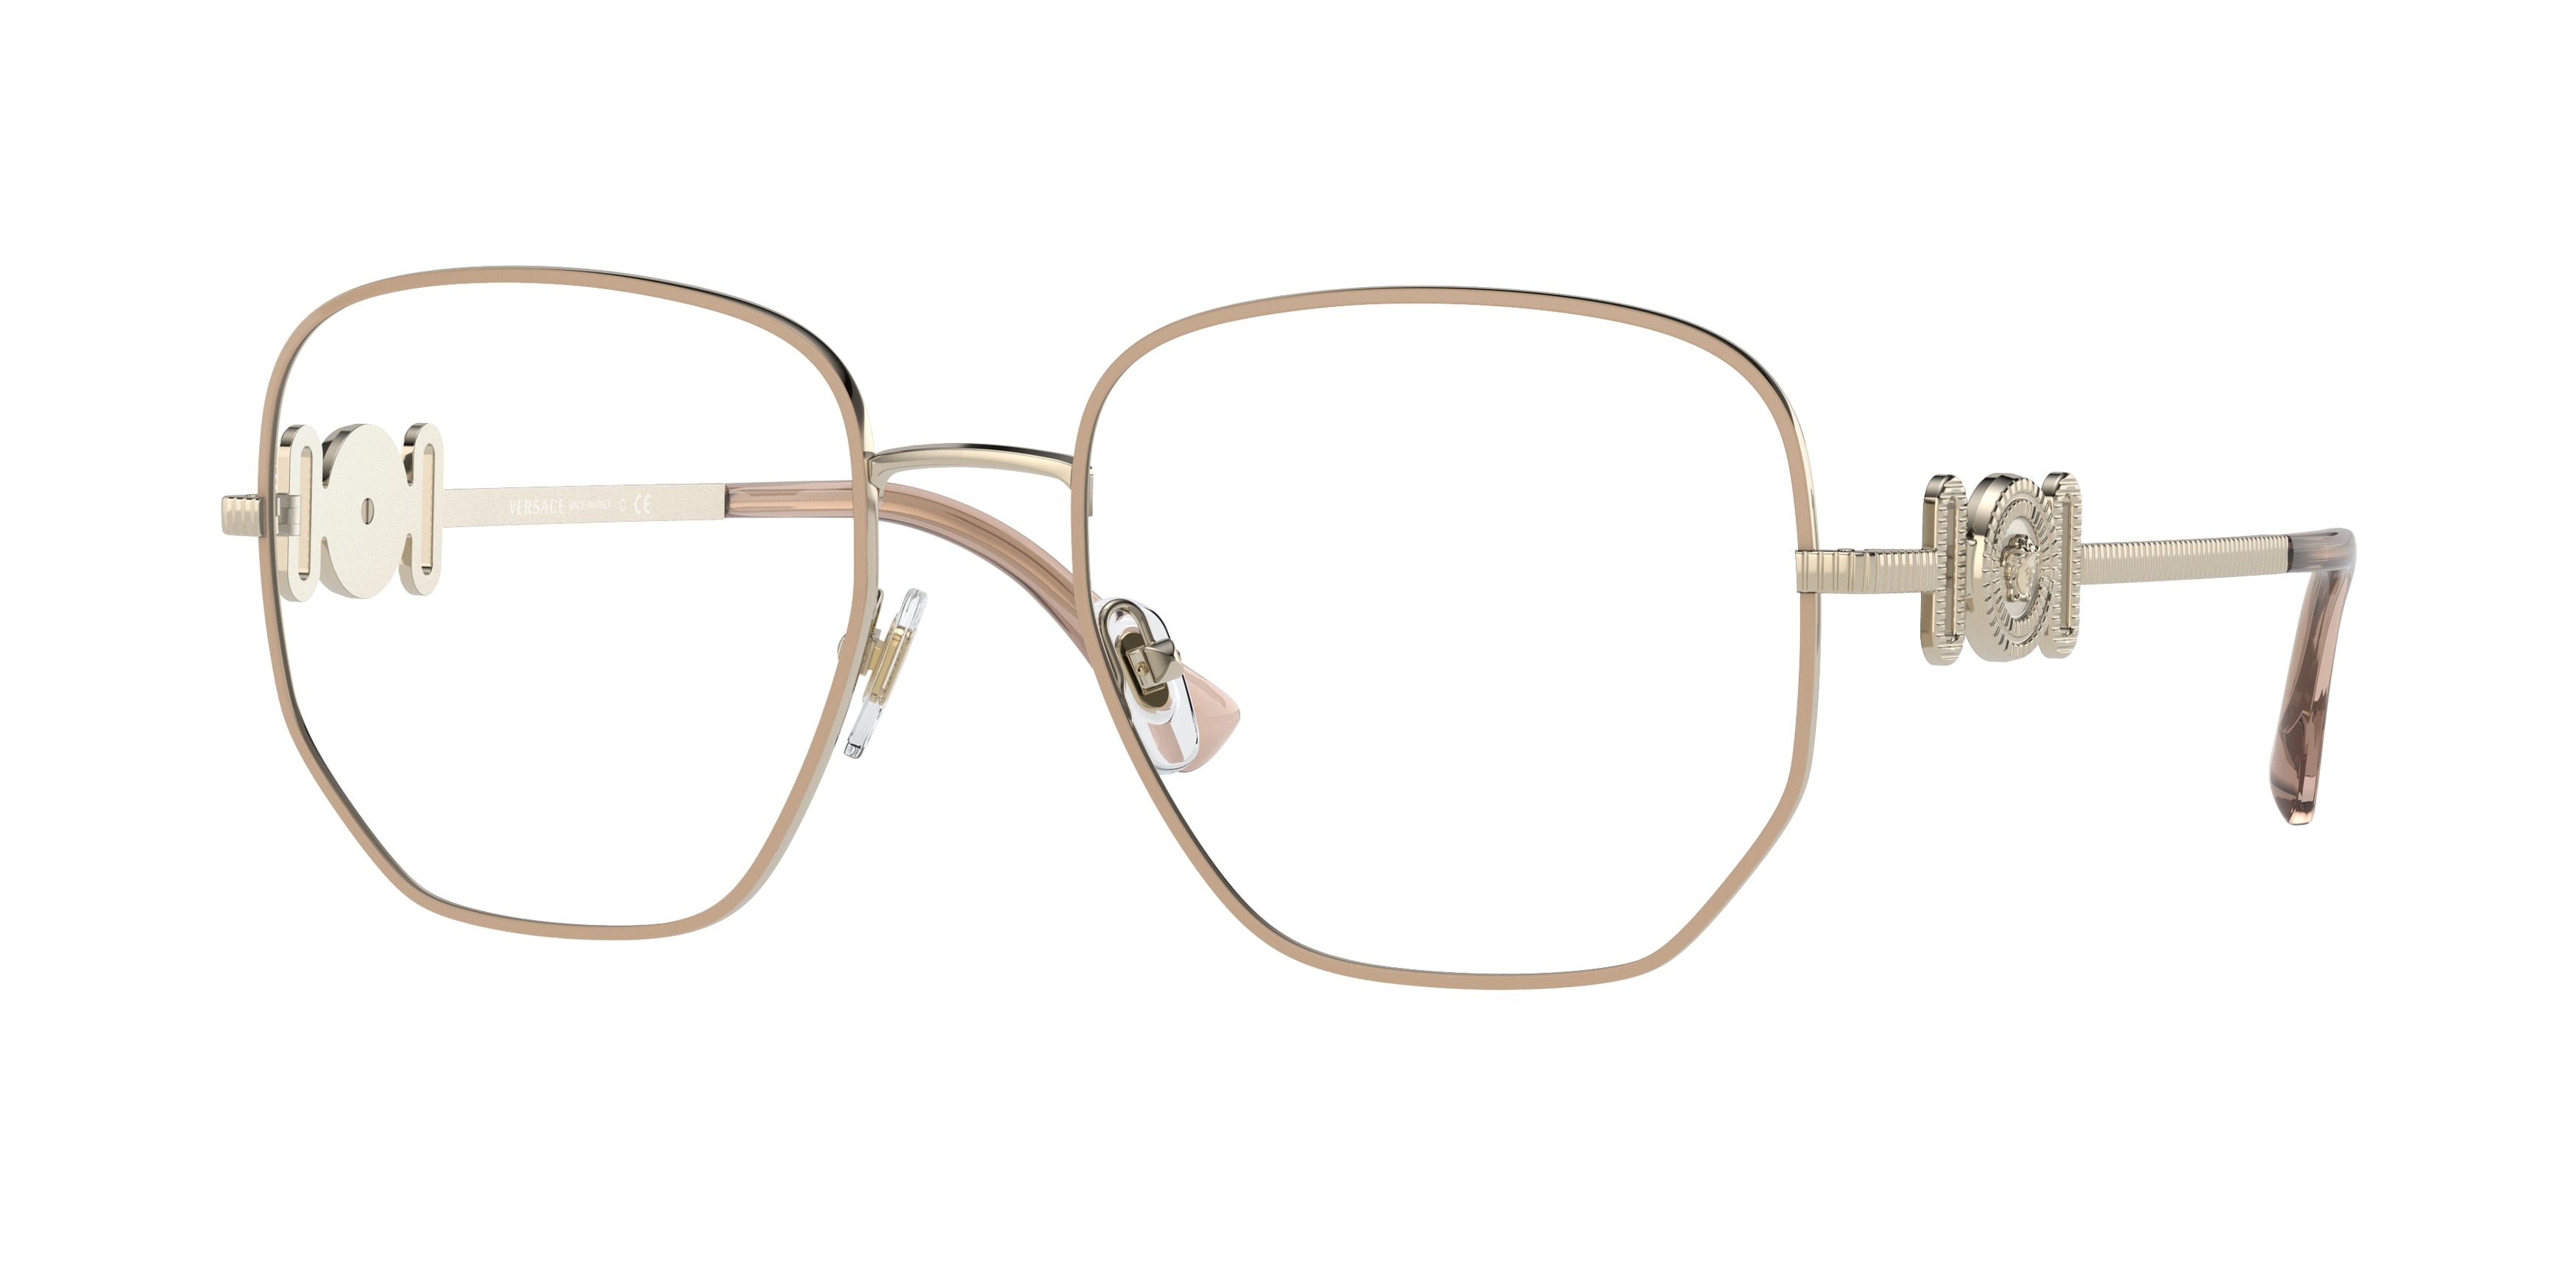 Versace VE1283 Irregular Eyeglasses  1476-Beige/Pale Gold 56-145-18 - Color Map Beige